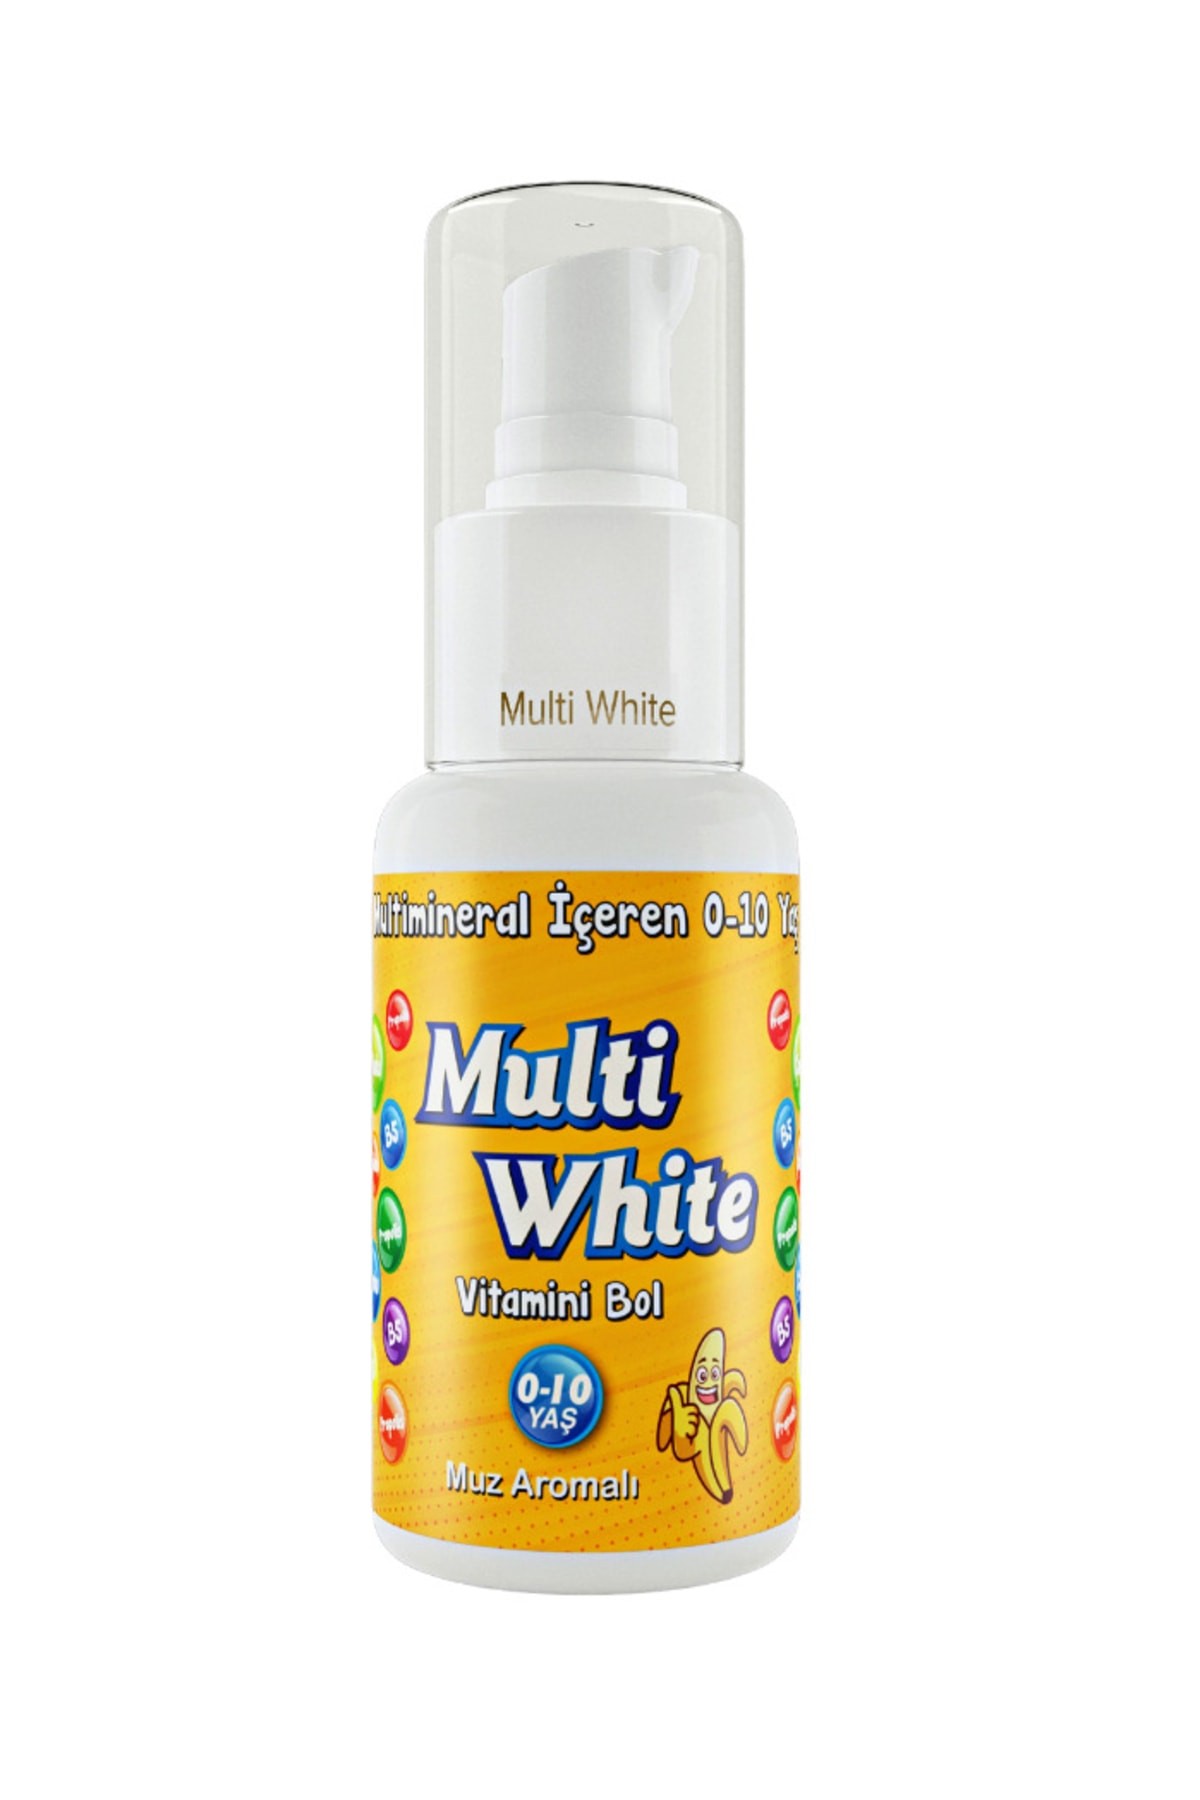 Multi White 0-10 Yaş Multivitamin Ve Multimineral Içeren Natural Muz Aromalı Çocuk Diş Macunu 50 ml